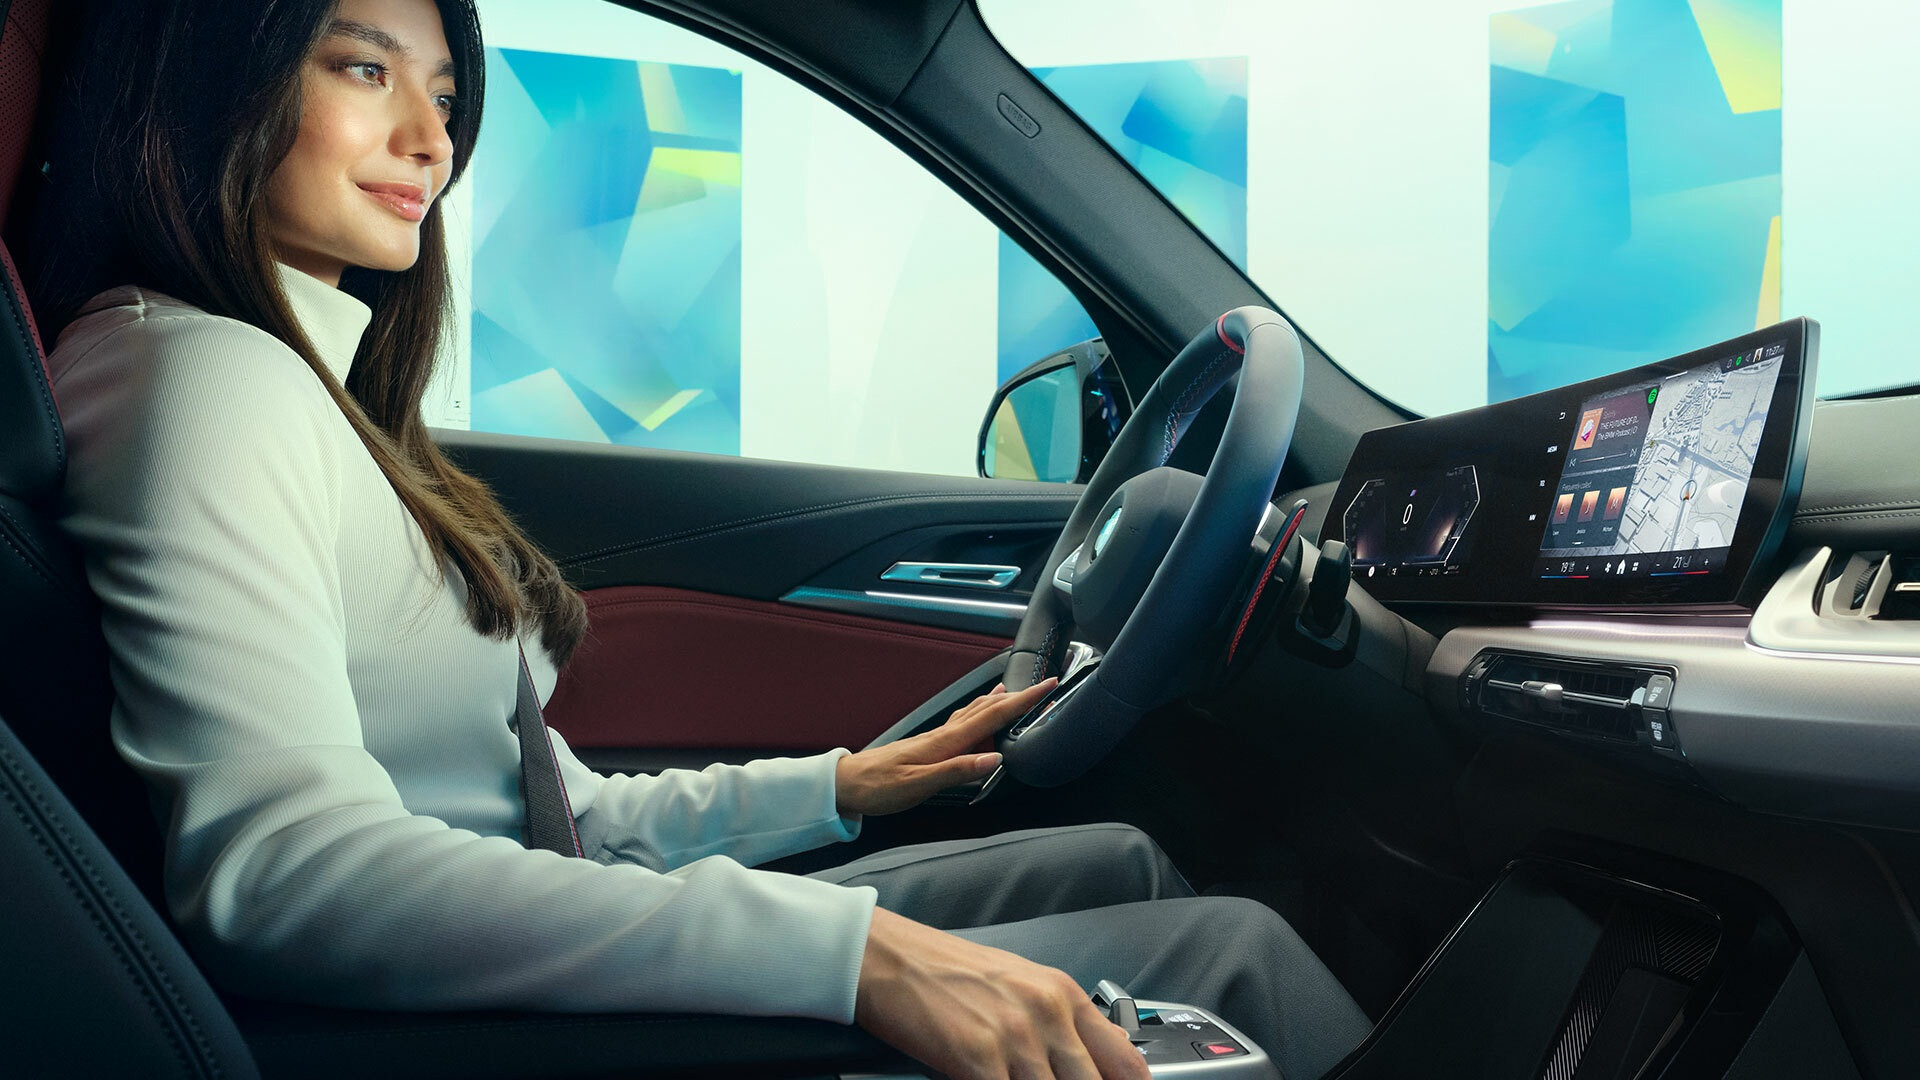 Xe BMW có thể tự động chuyển làn khi tài xế liếc gương - 1